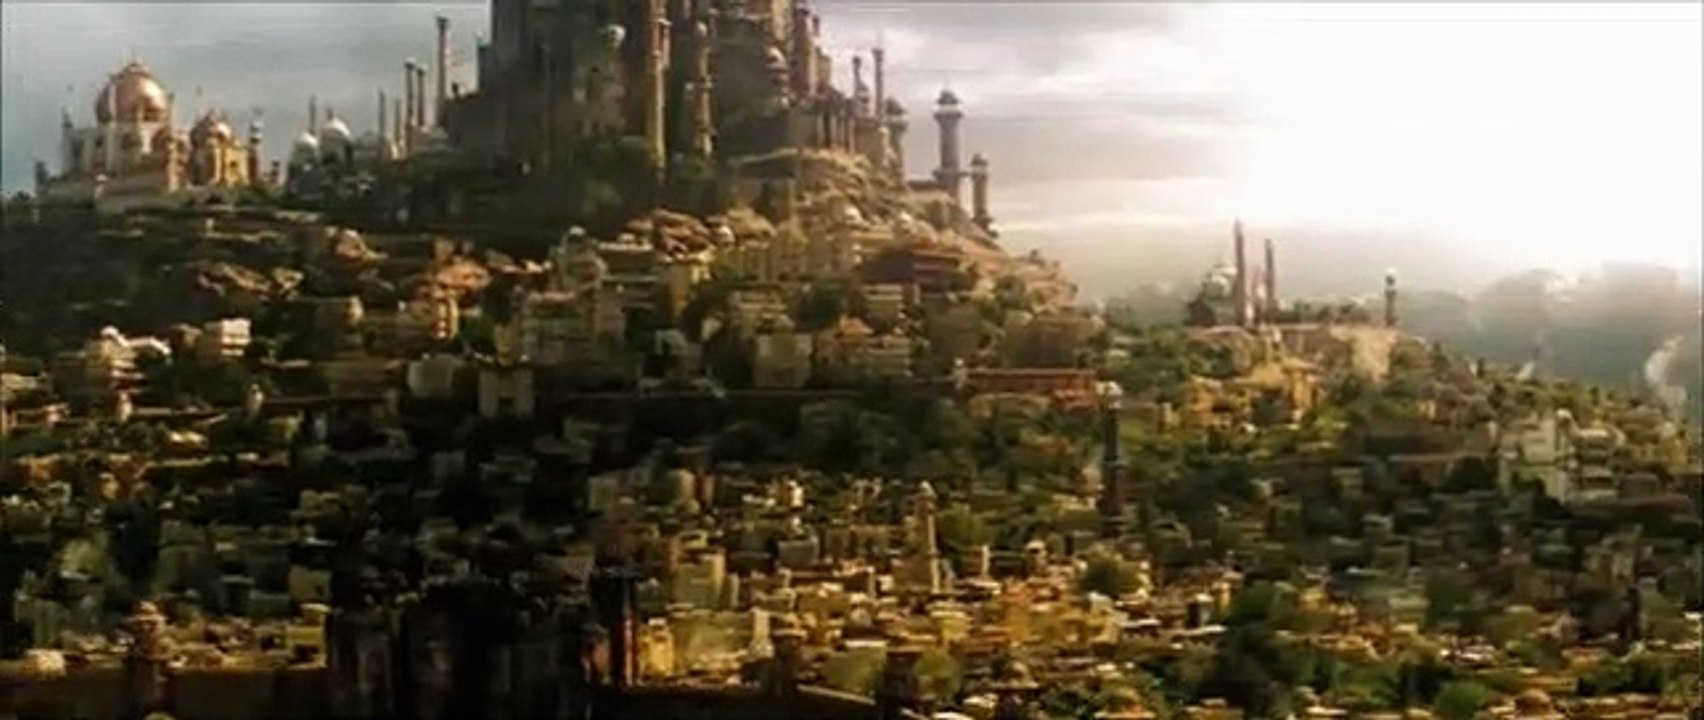 Prince Of Persia - Der Sand der Zeit Trailer DF